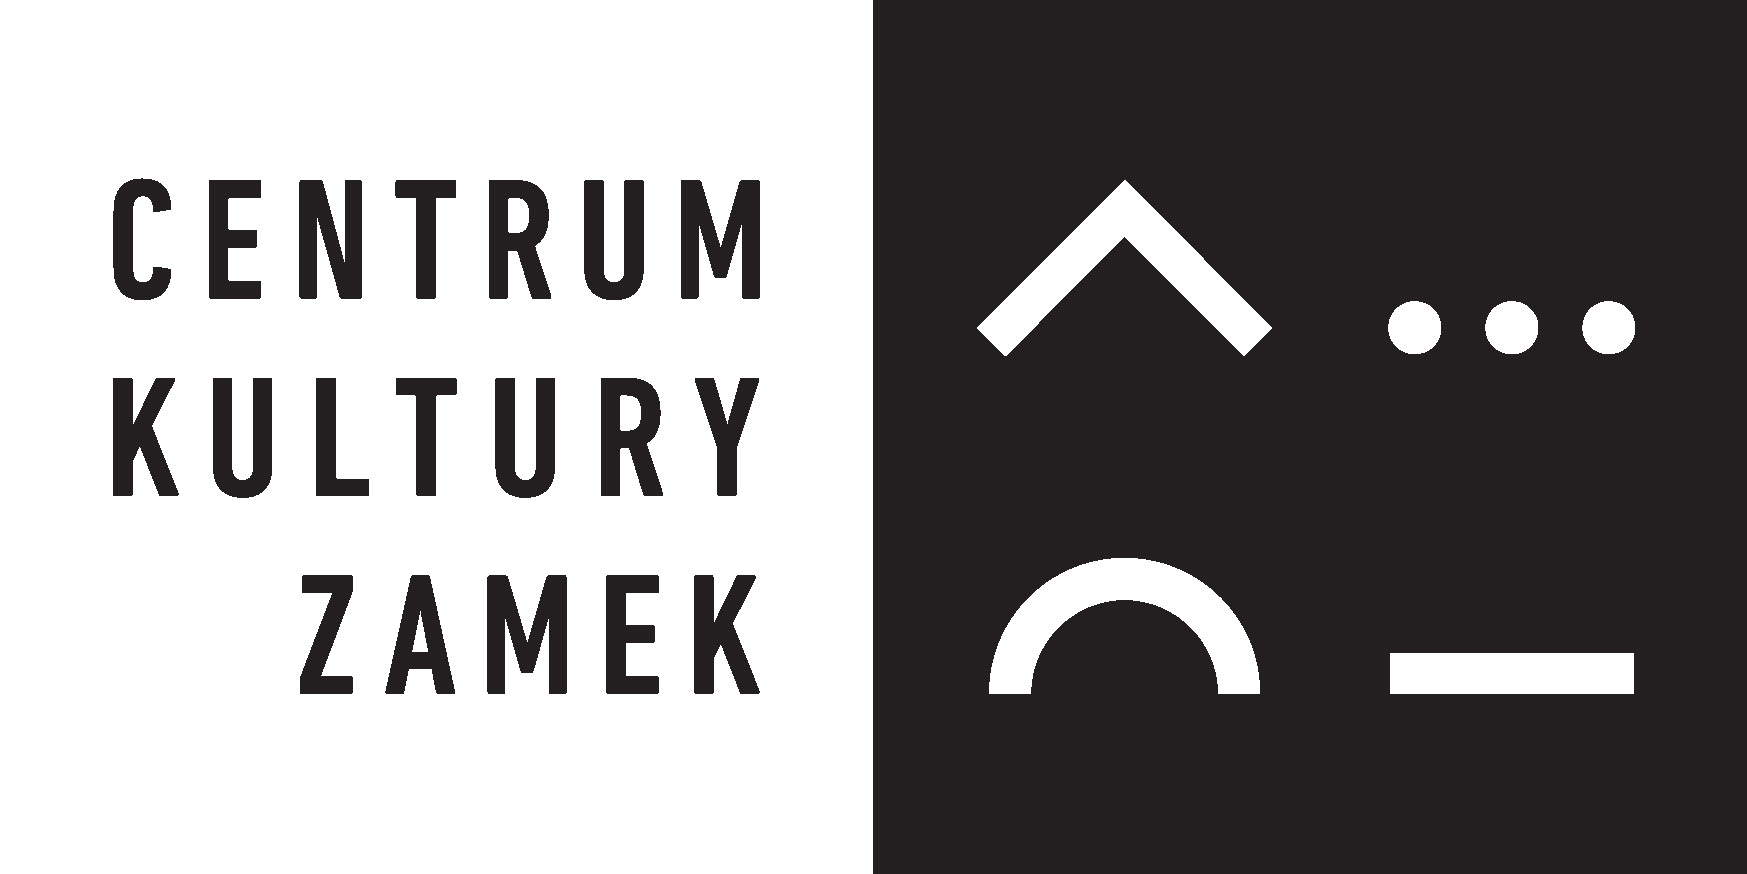 logo Centrum Kultury Zamek